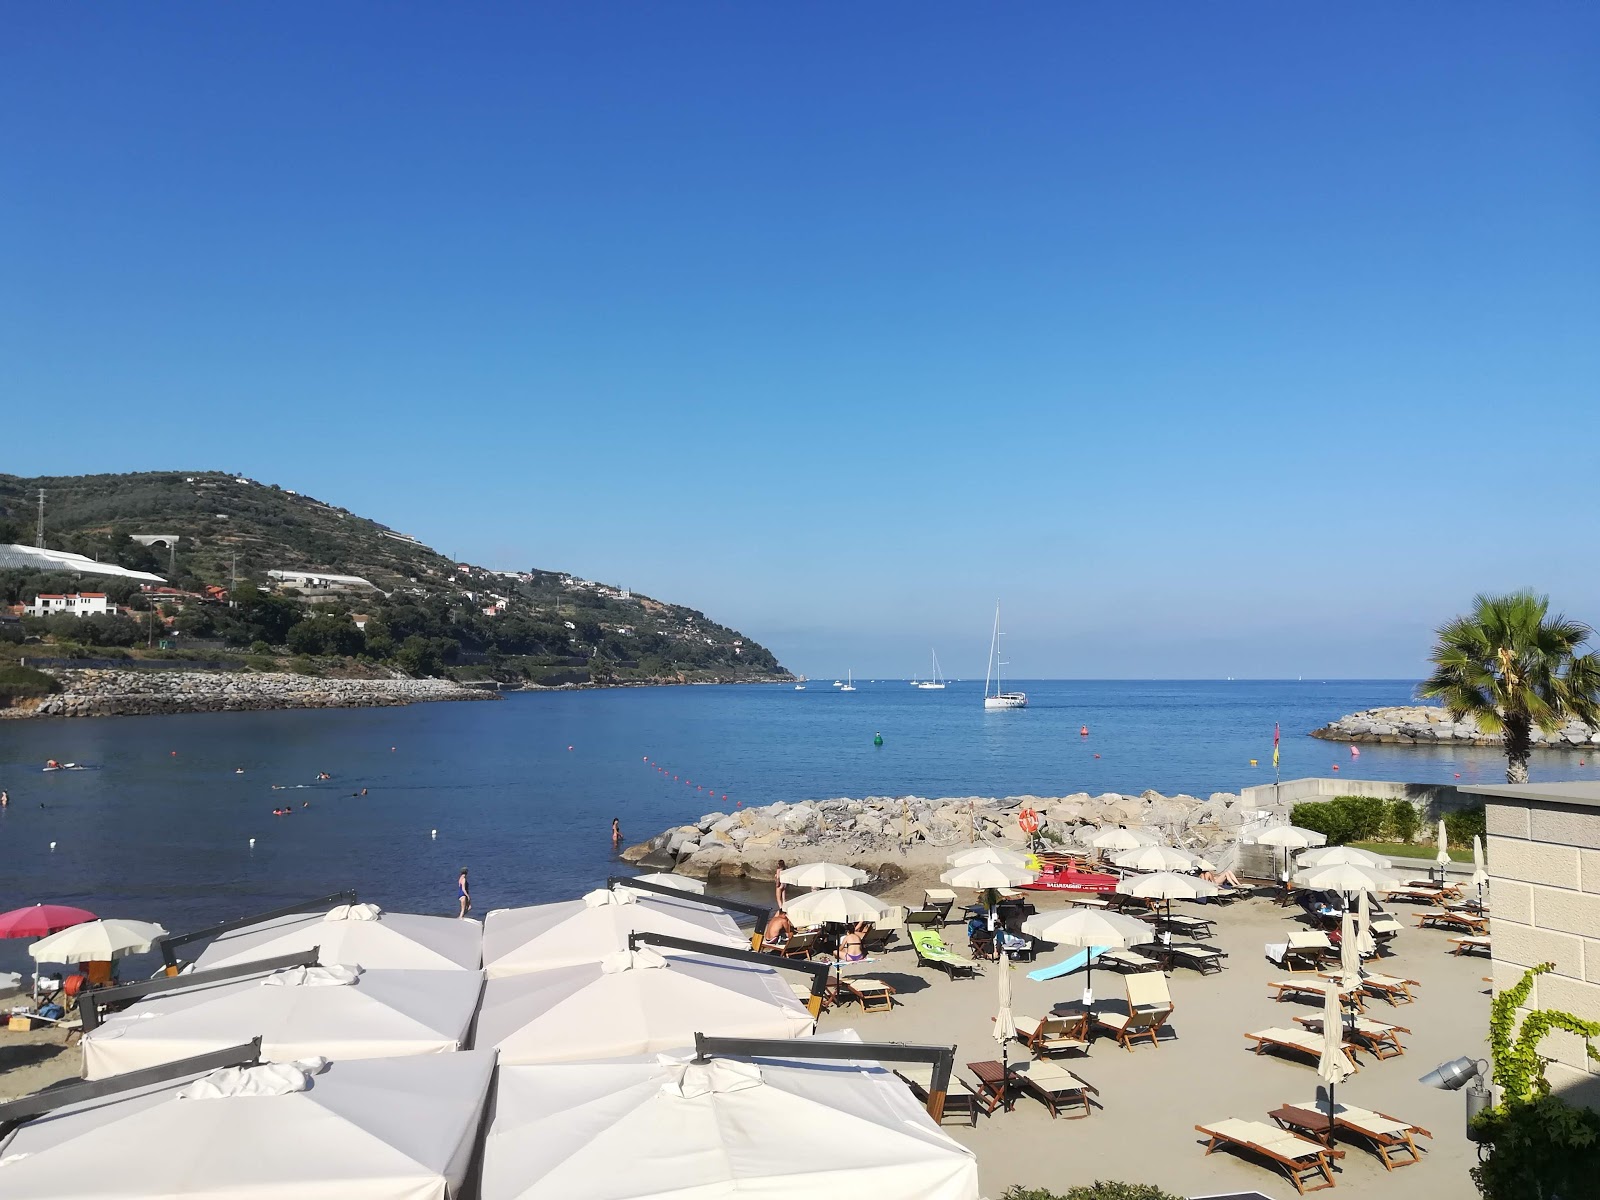 Fotografie cu Ponticelli beach cu nivelul de curățenie in medie